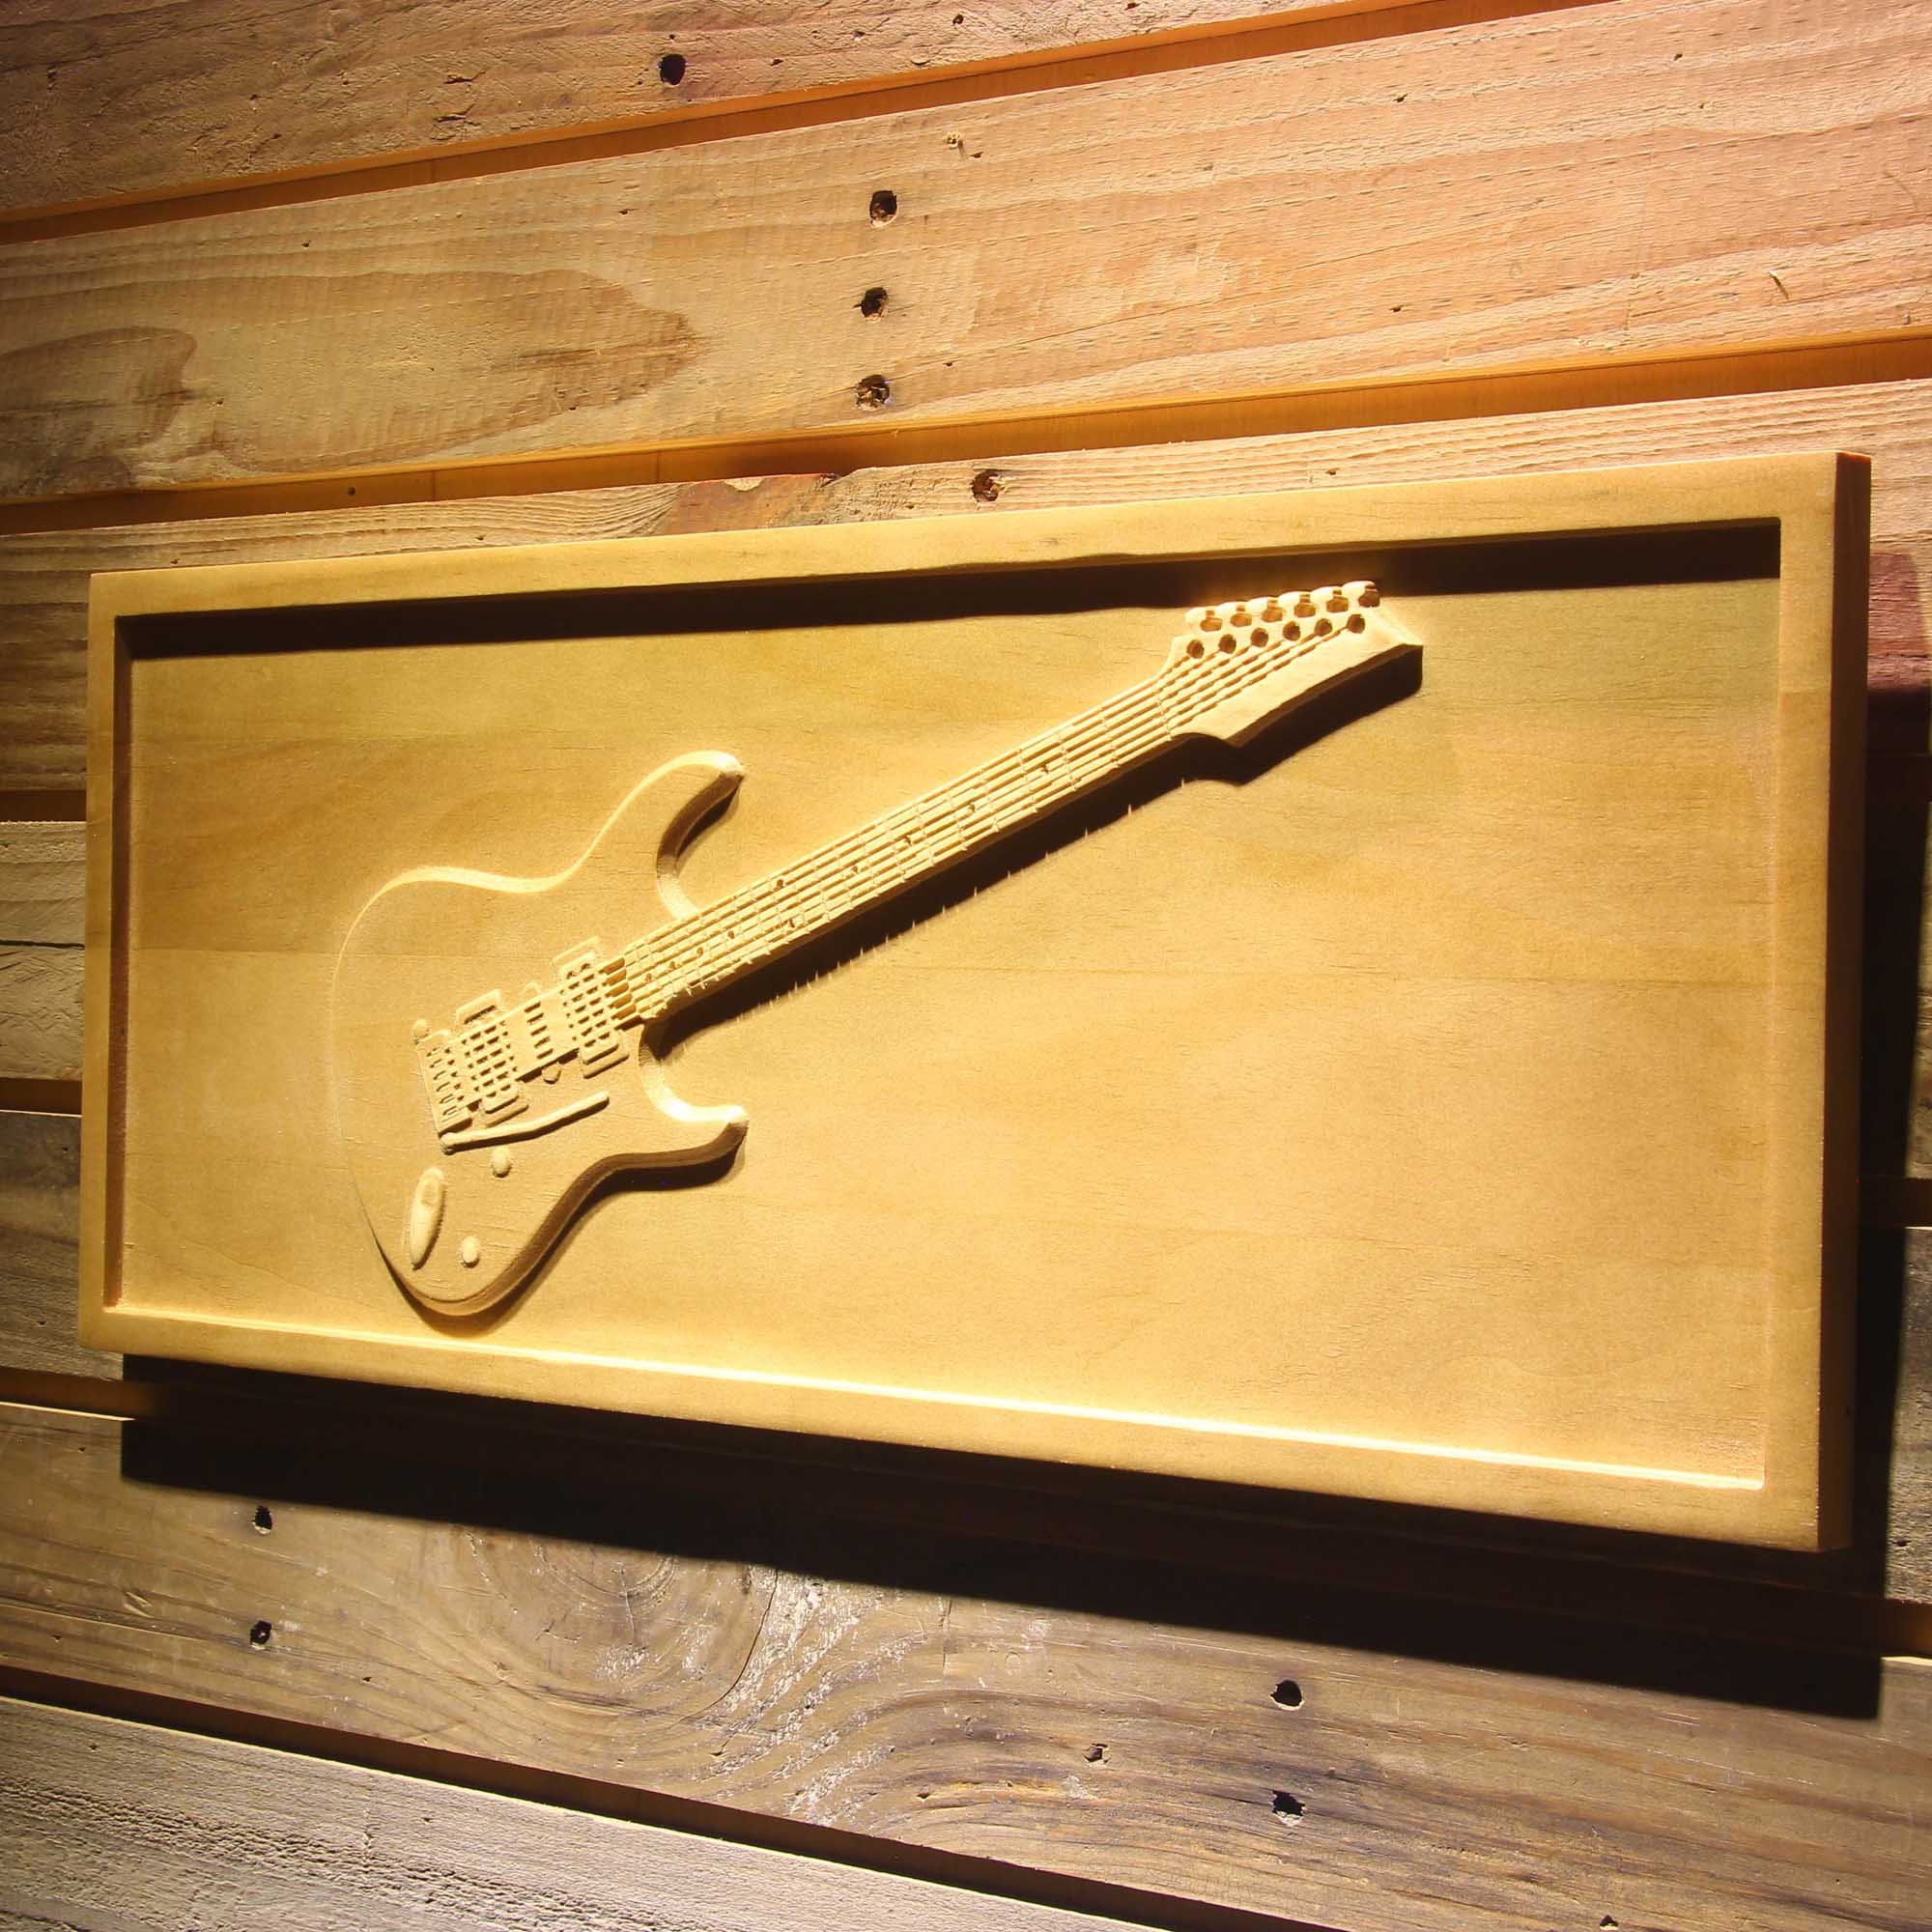 Fender Stratocaster Guitars 3D Wooden Engrave Sign